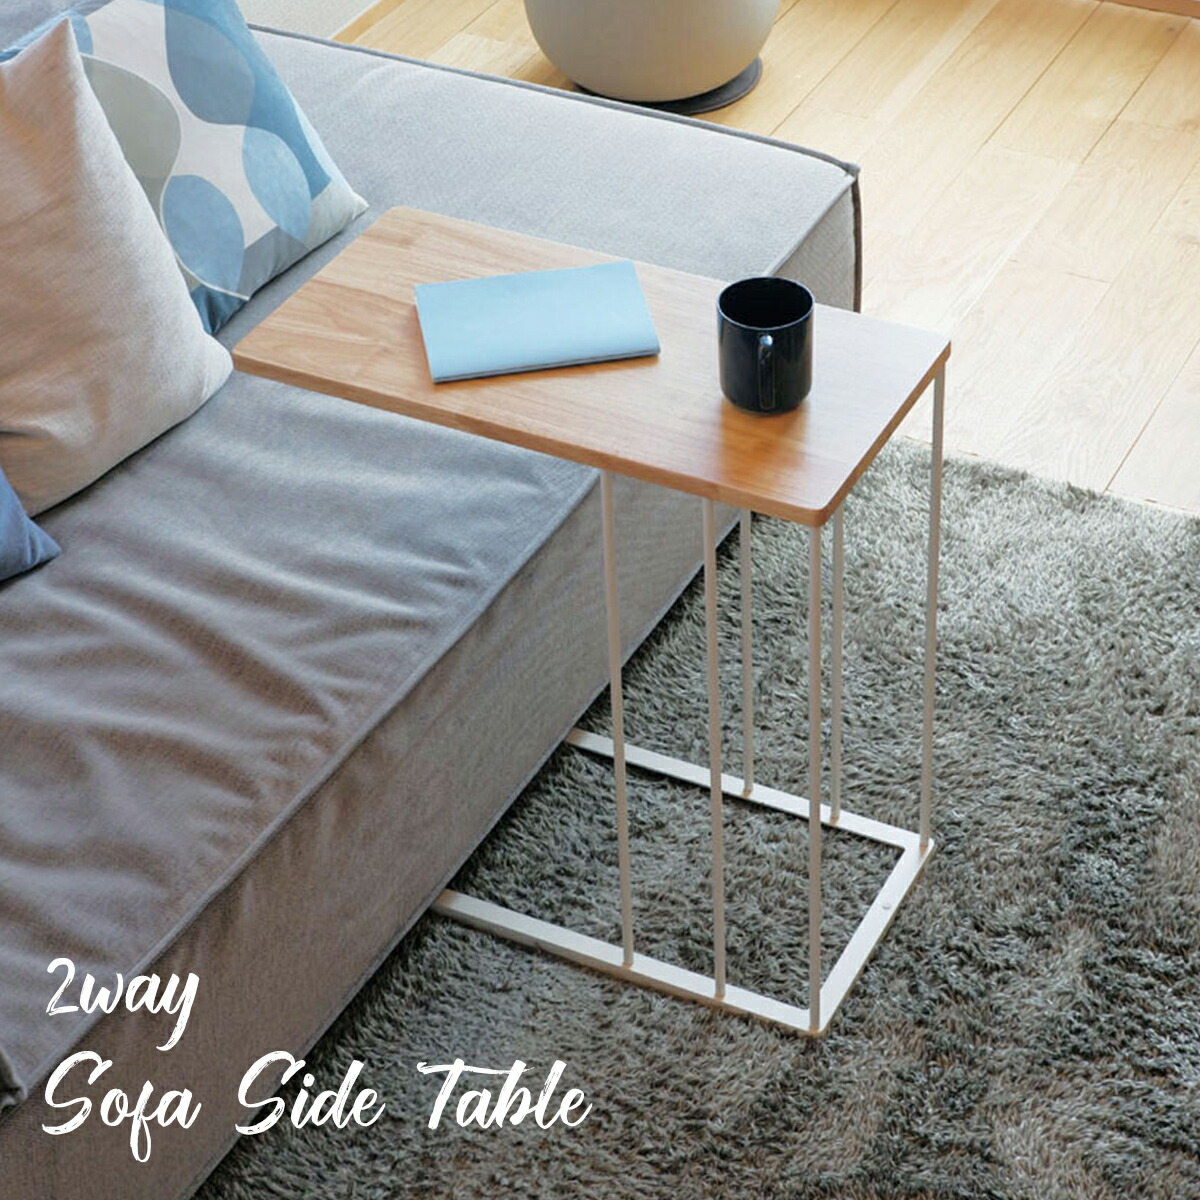 サイドテーブル 2wayソファサイドテーブル ミニテーブル ベッドサイド